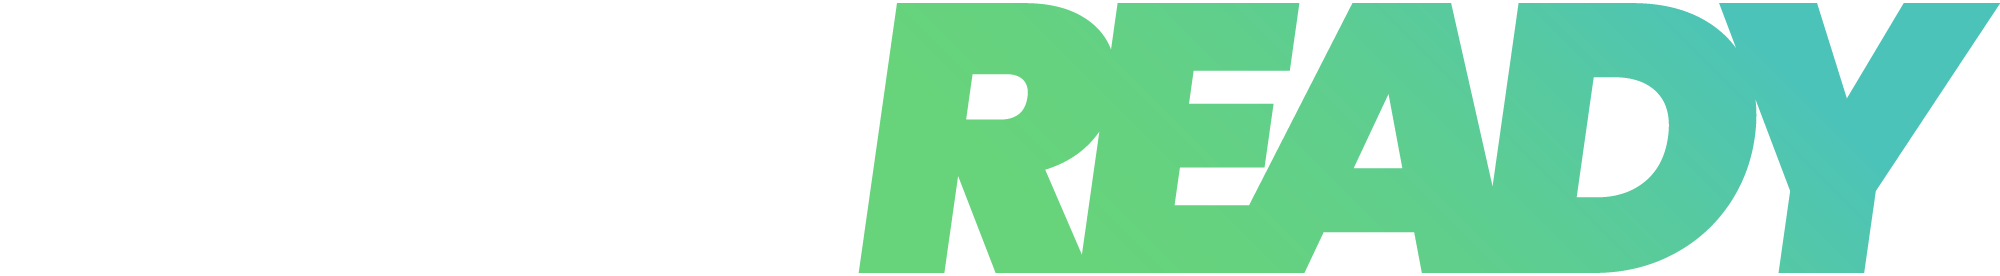 Race ready logo - White